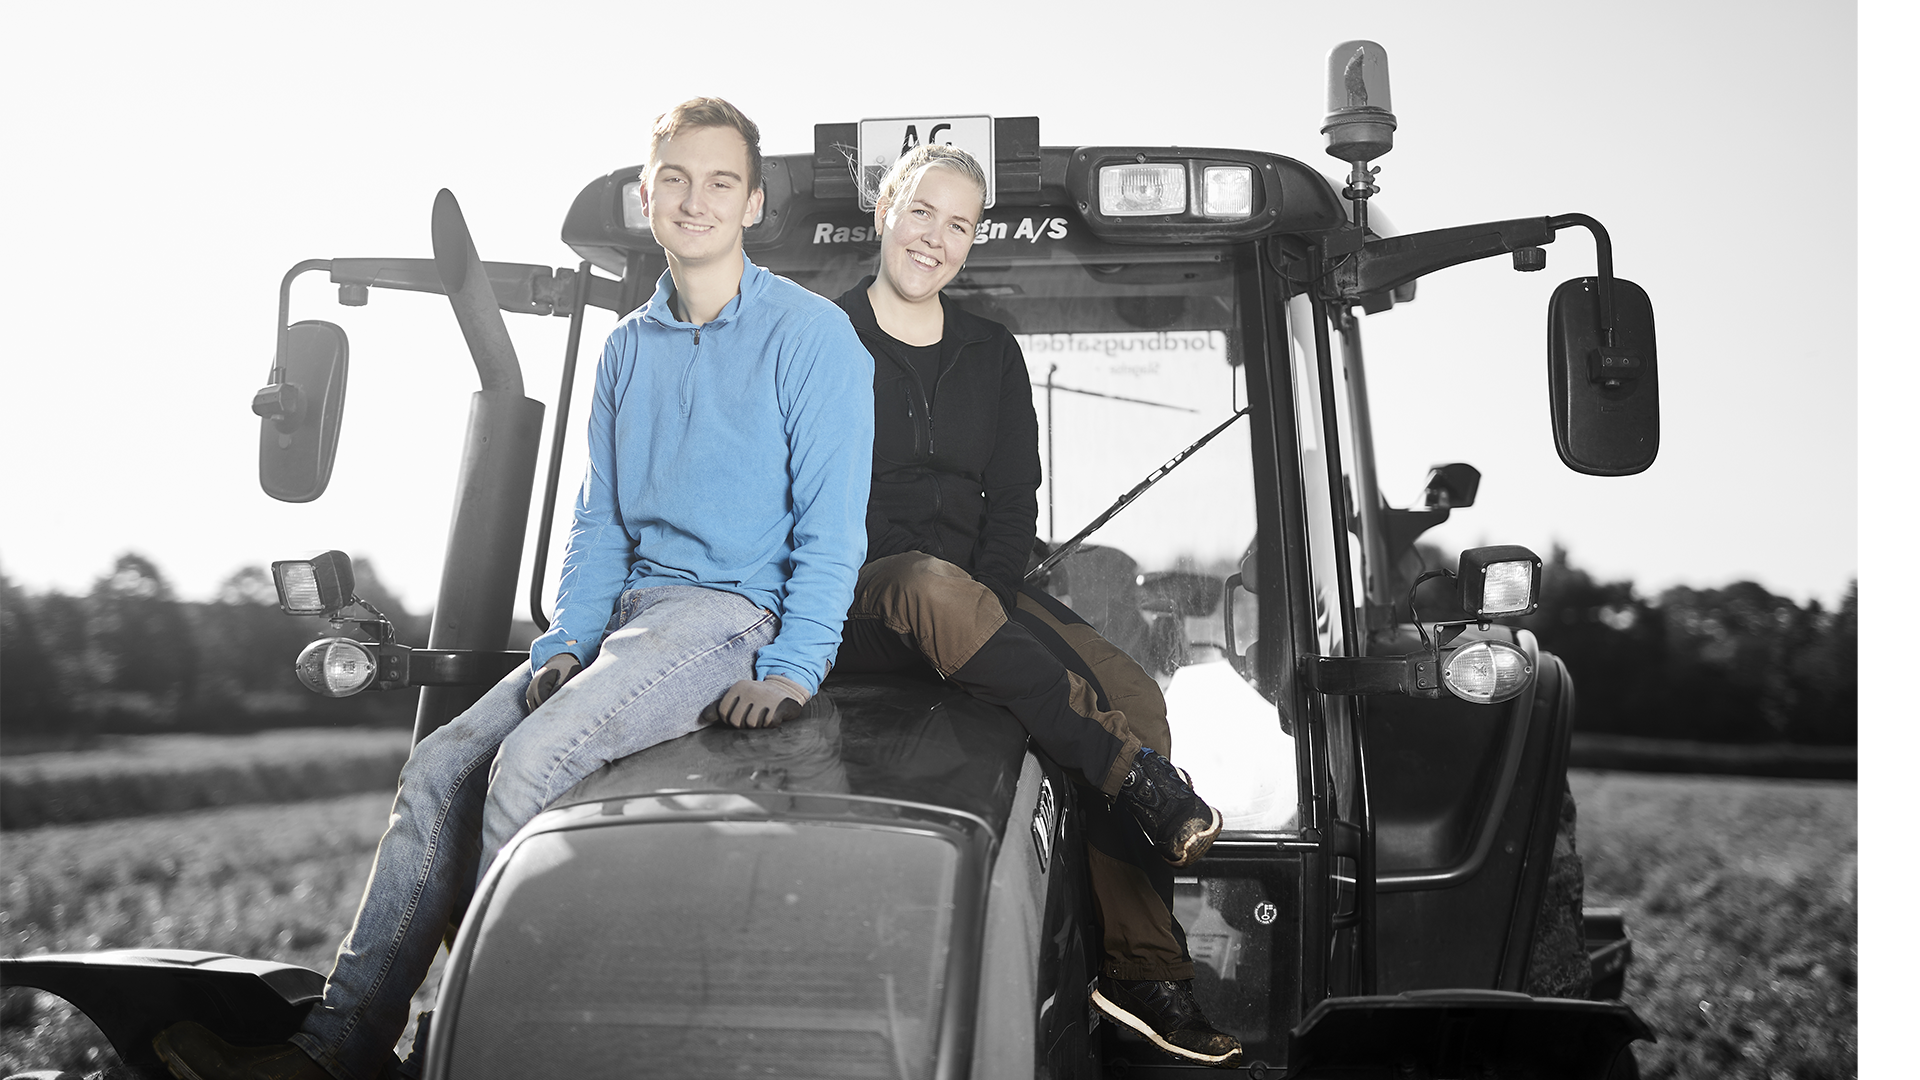 Vejledning over 25 år - landbrugselever på traktor